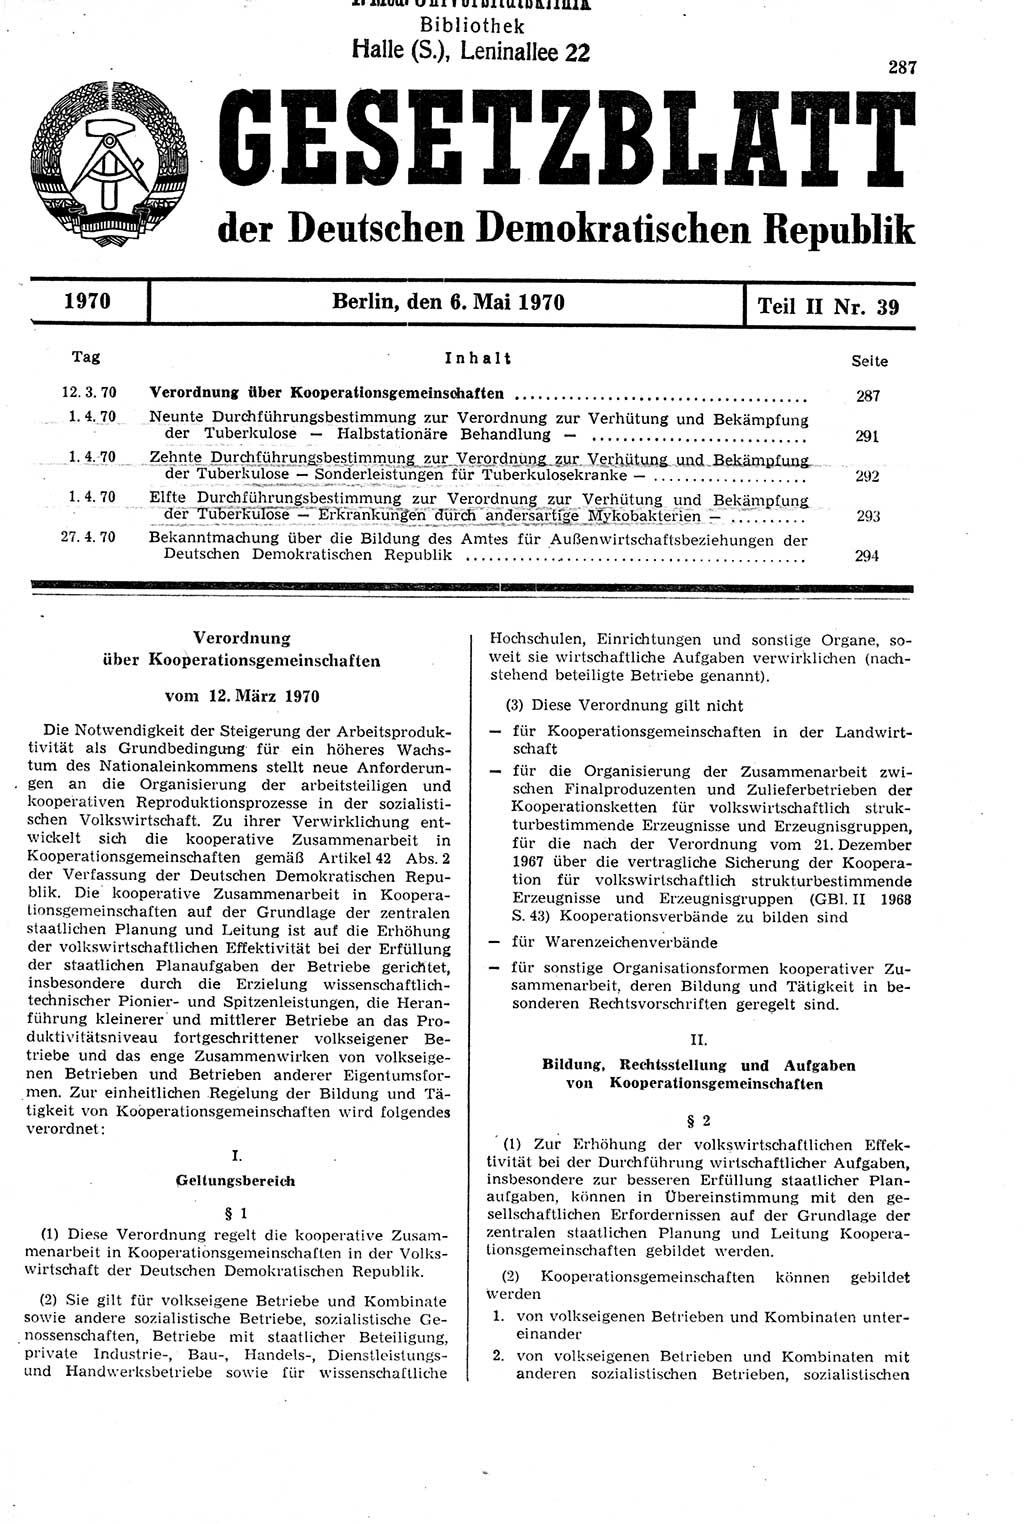 Gesetzblatt (GBl.) der Deutschen Demokratischen Republik (DDR) Teil ⅠⅠ 1970, Seite 287 (GBl. DDR ⅠⅠ 1970, S. 287)